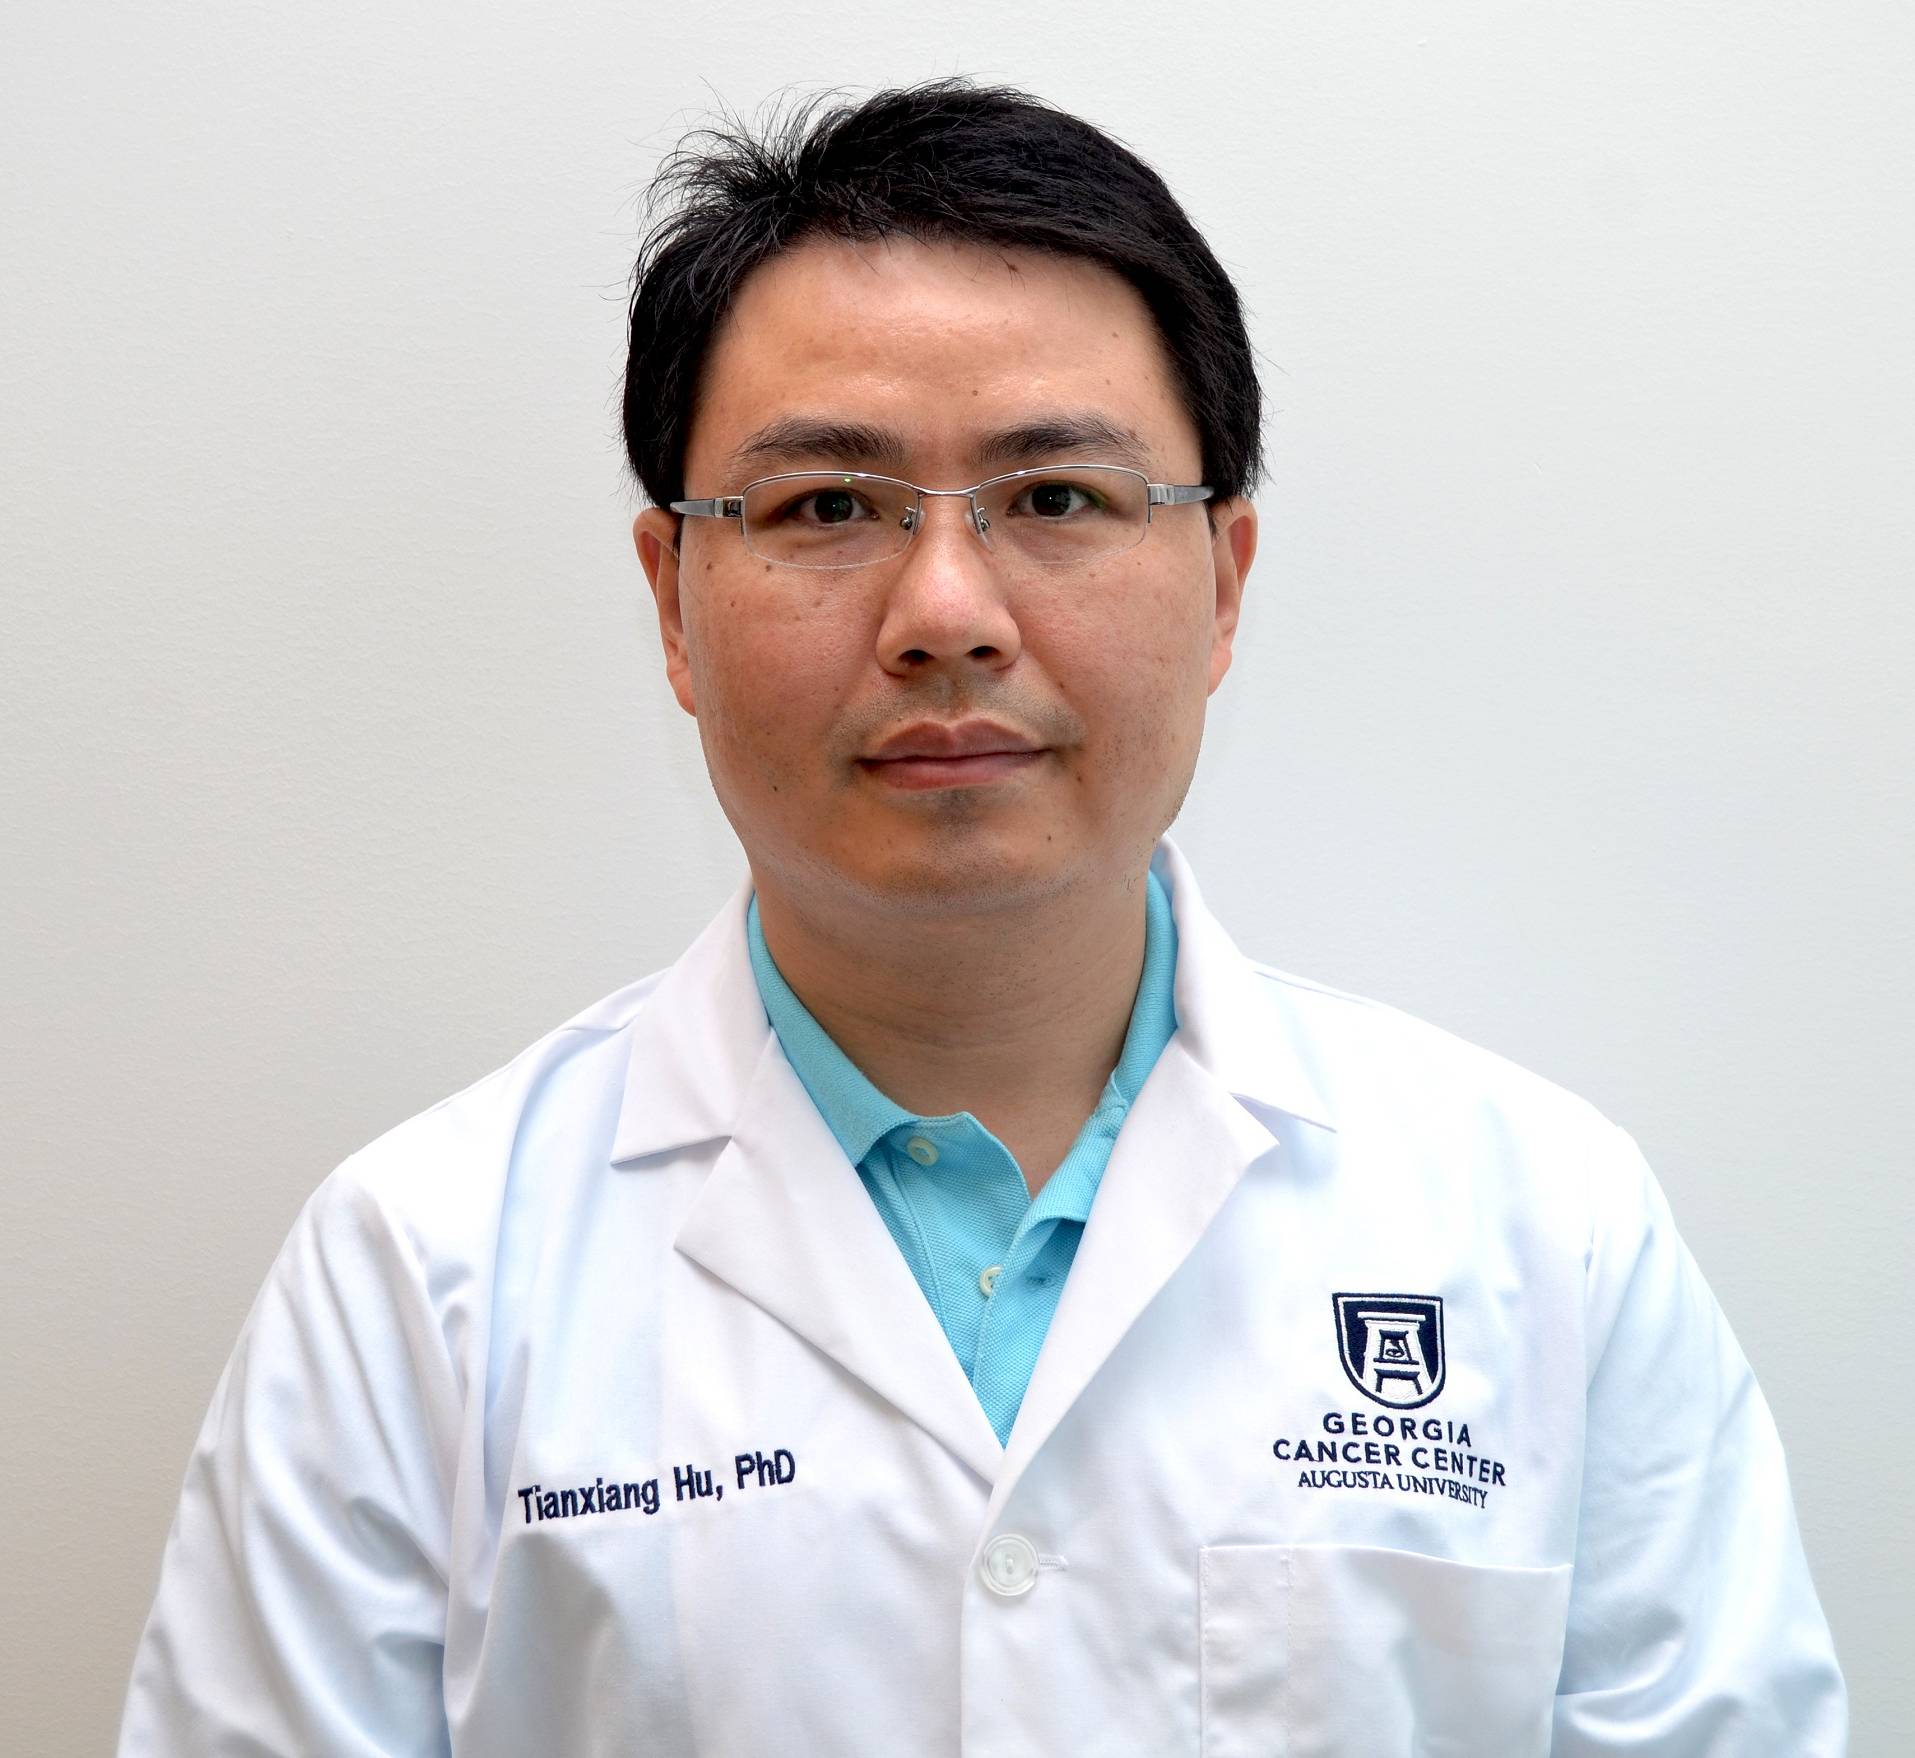 photo of Tianxiang "Sean" Hu, PhD